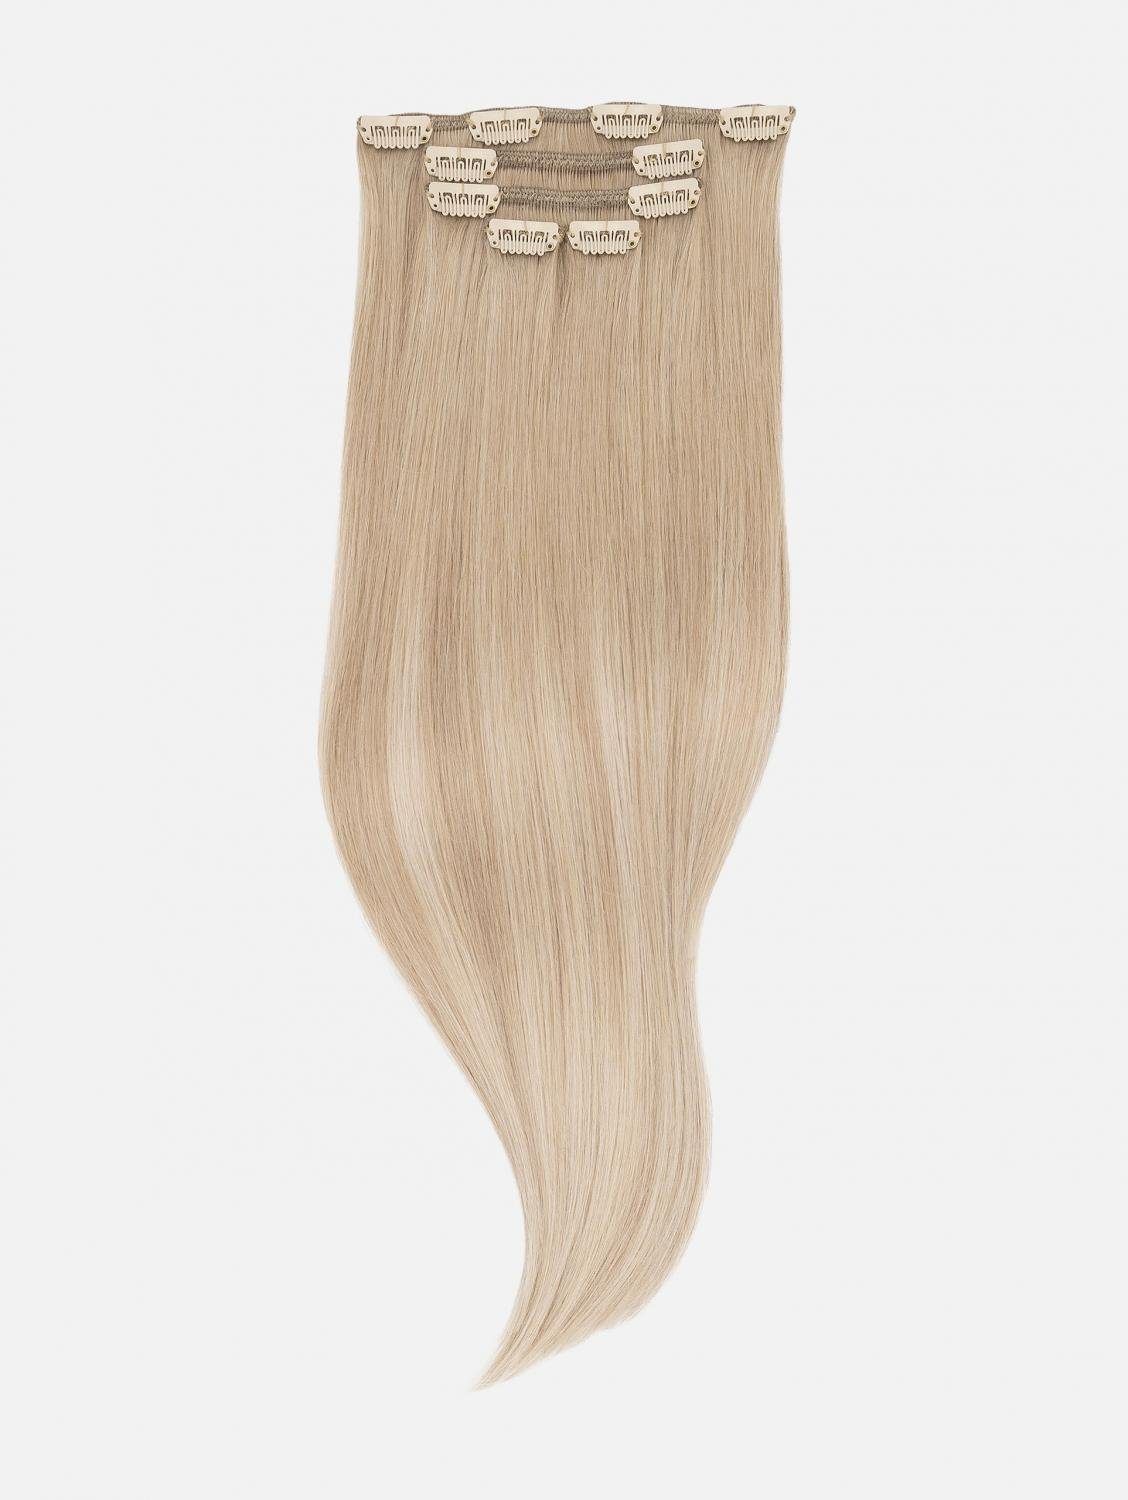 Echthaar 50cm, Echthaar NATURAL Echthaar-Extension Haarverlängerung #B18/24A Balayage 5-teilig Clip-In Balayage) - EH Extensions Blonde (Honey -